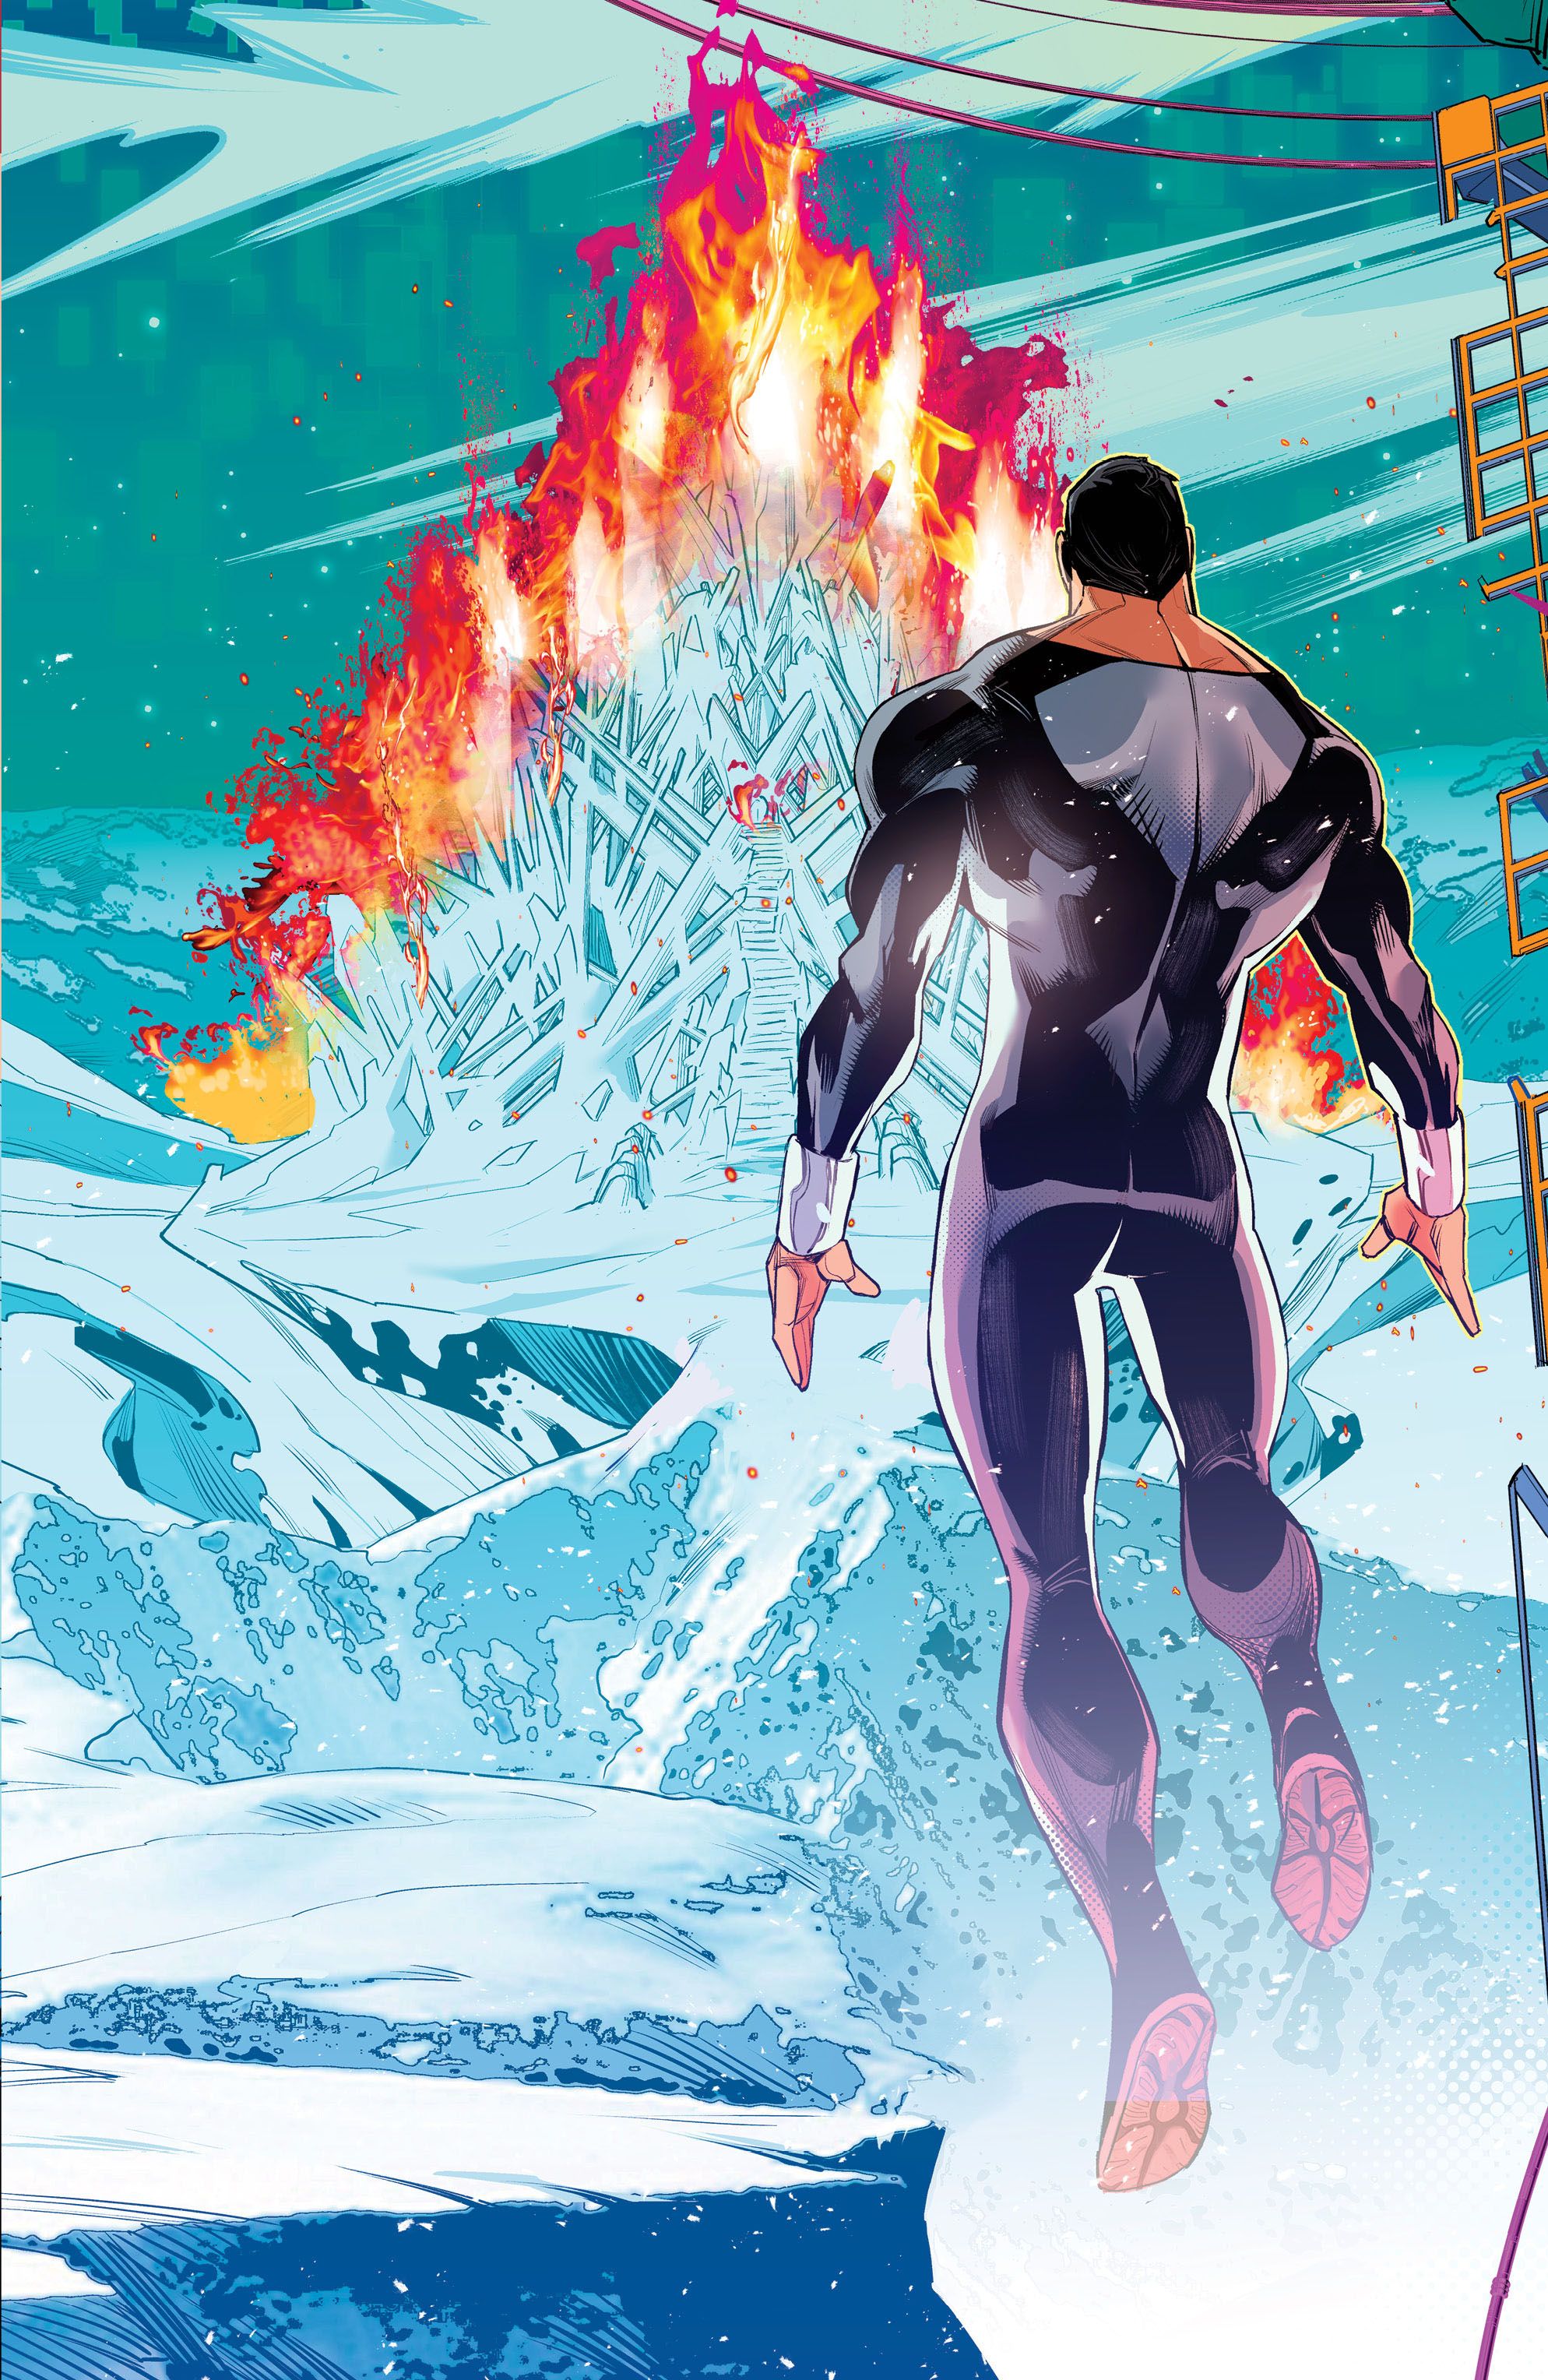 Capa da variante Timms de Absolute Power 3: Superman olha para a Fortaleza da Solidão em chamas.